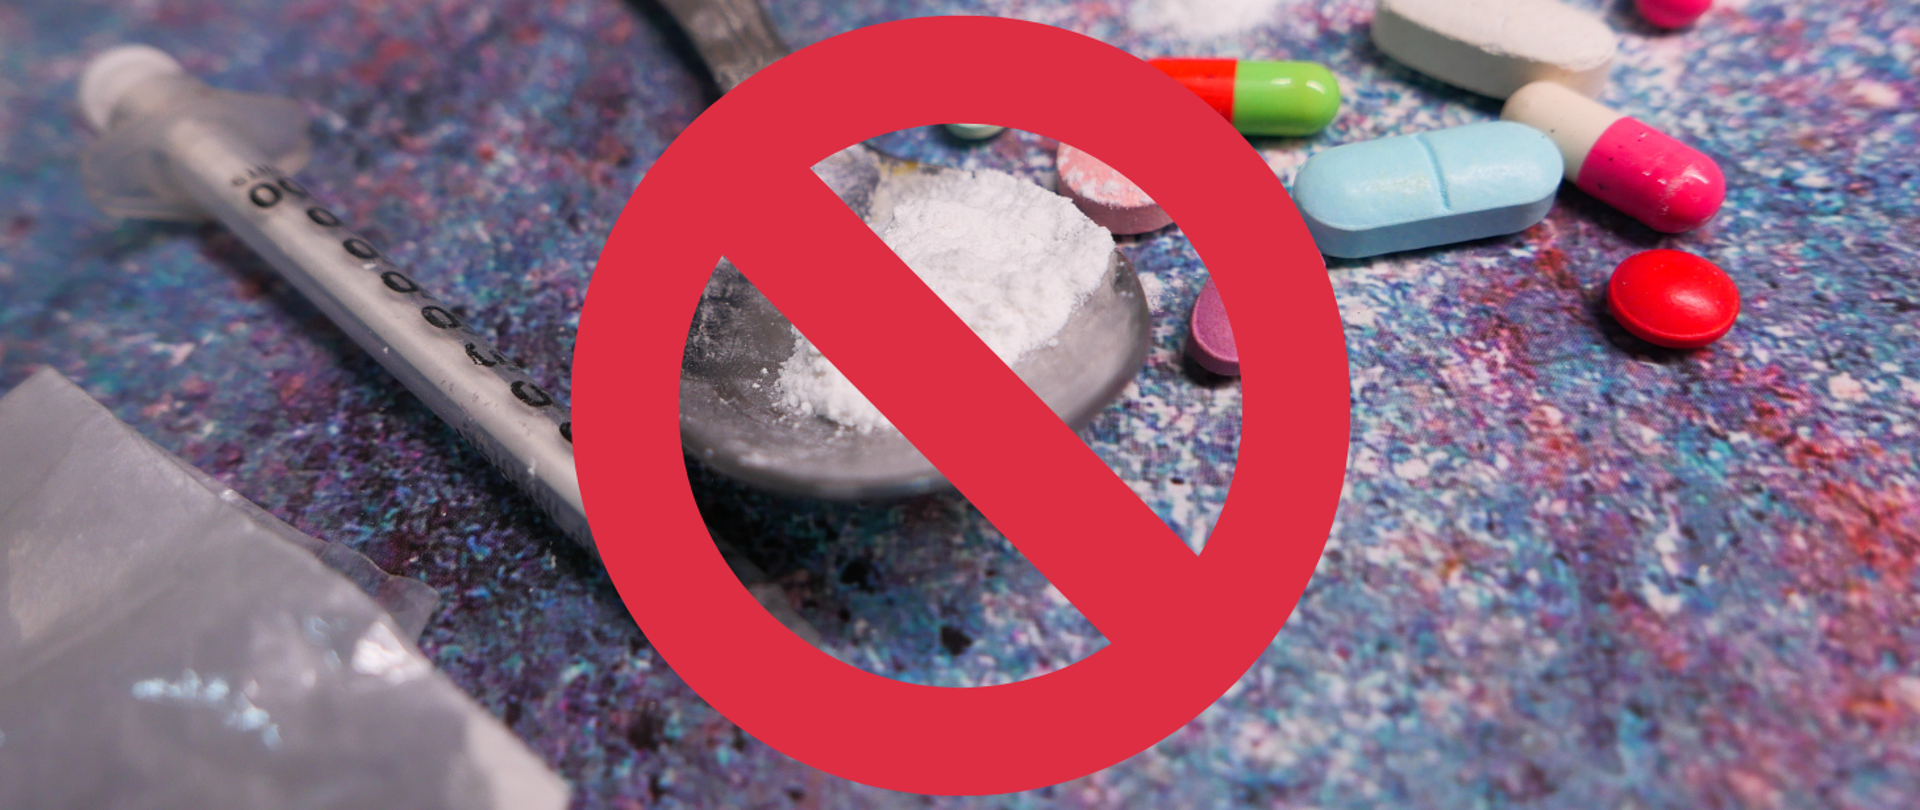 Znak zakazu umieszczony na narkotykach w formie proszku, tabletkach, strzykawce